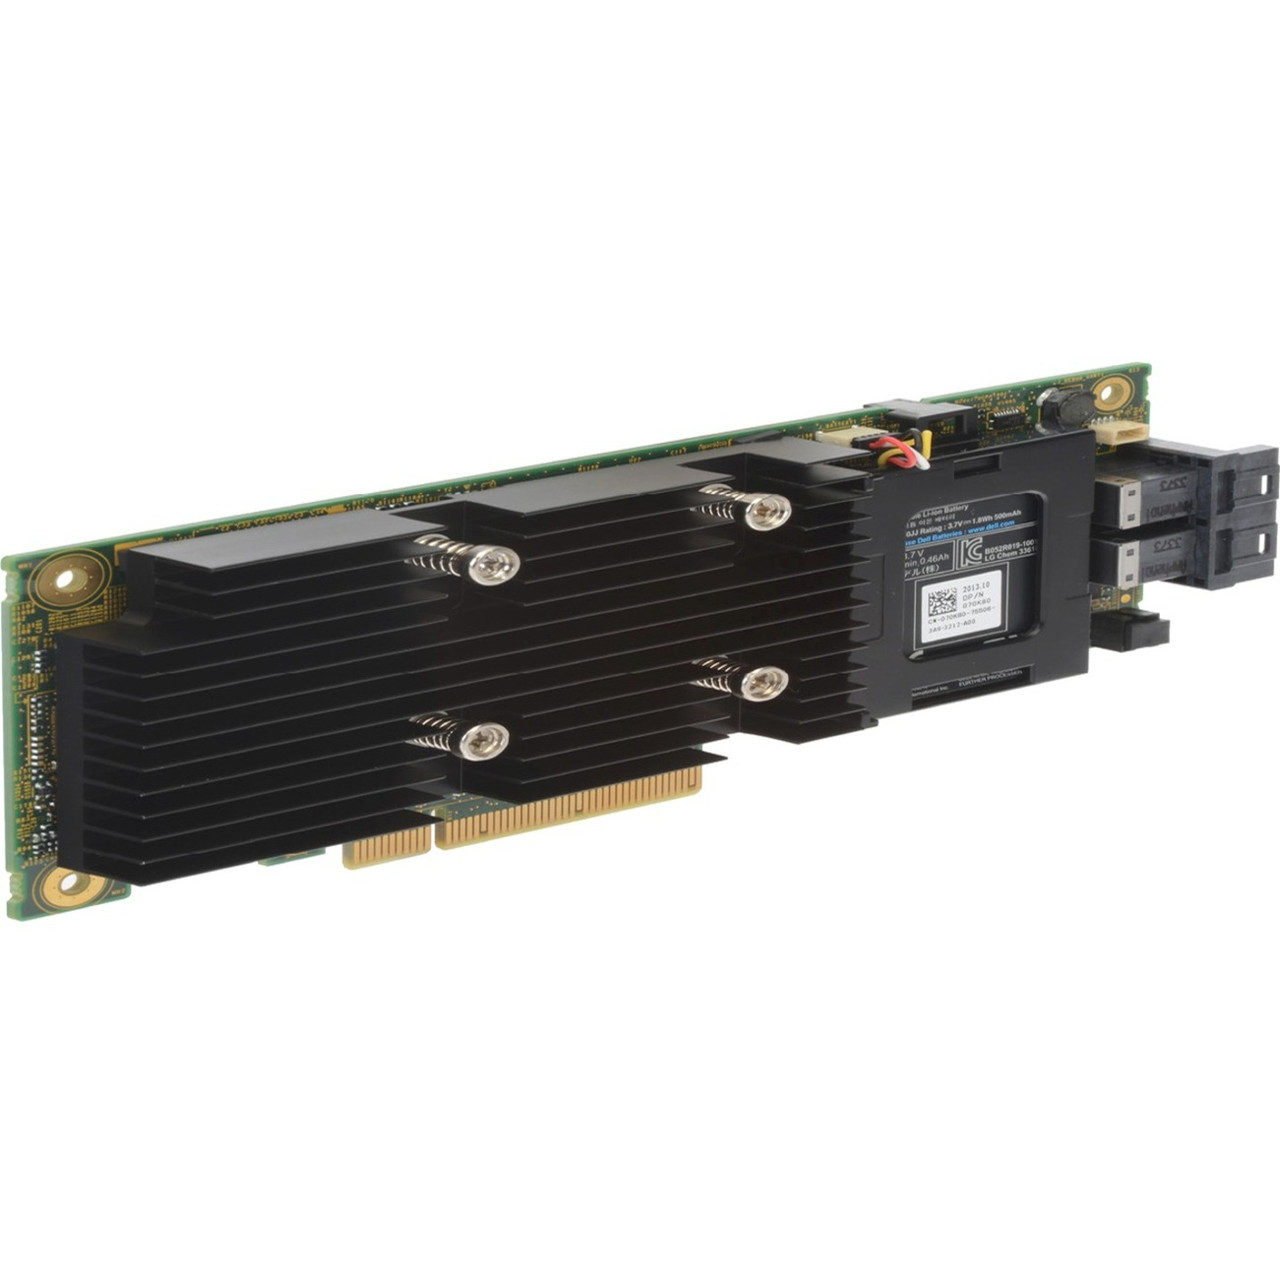 Dell -12Gb/s SAS PCI Express 3.0 Plug=n Card -RAID Supported -0, 1, 5, 6, 10, 50, 60 RAID Level -8 Total SAS Port(s) -8 SAS Port(s) Internal -2 GB